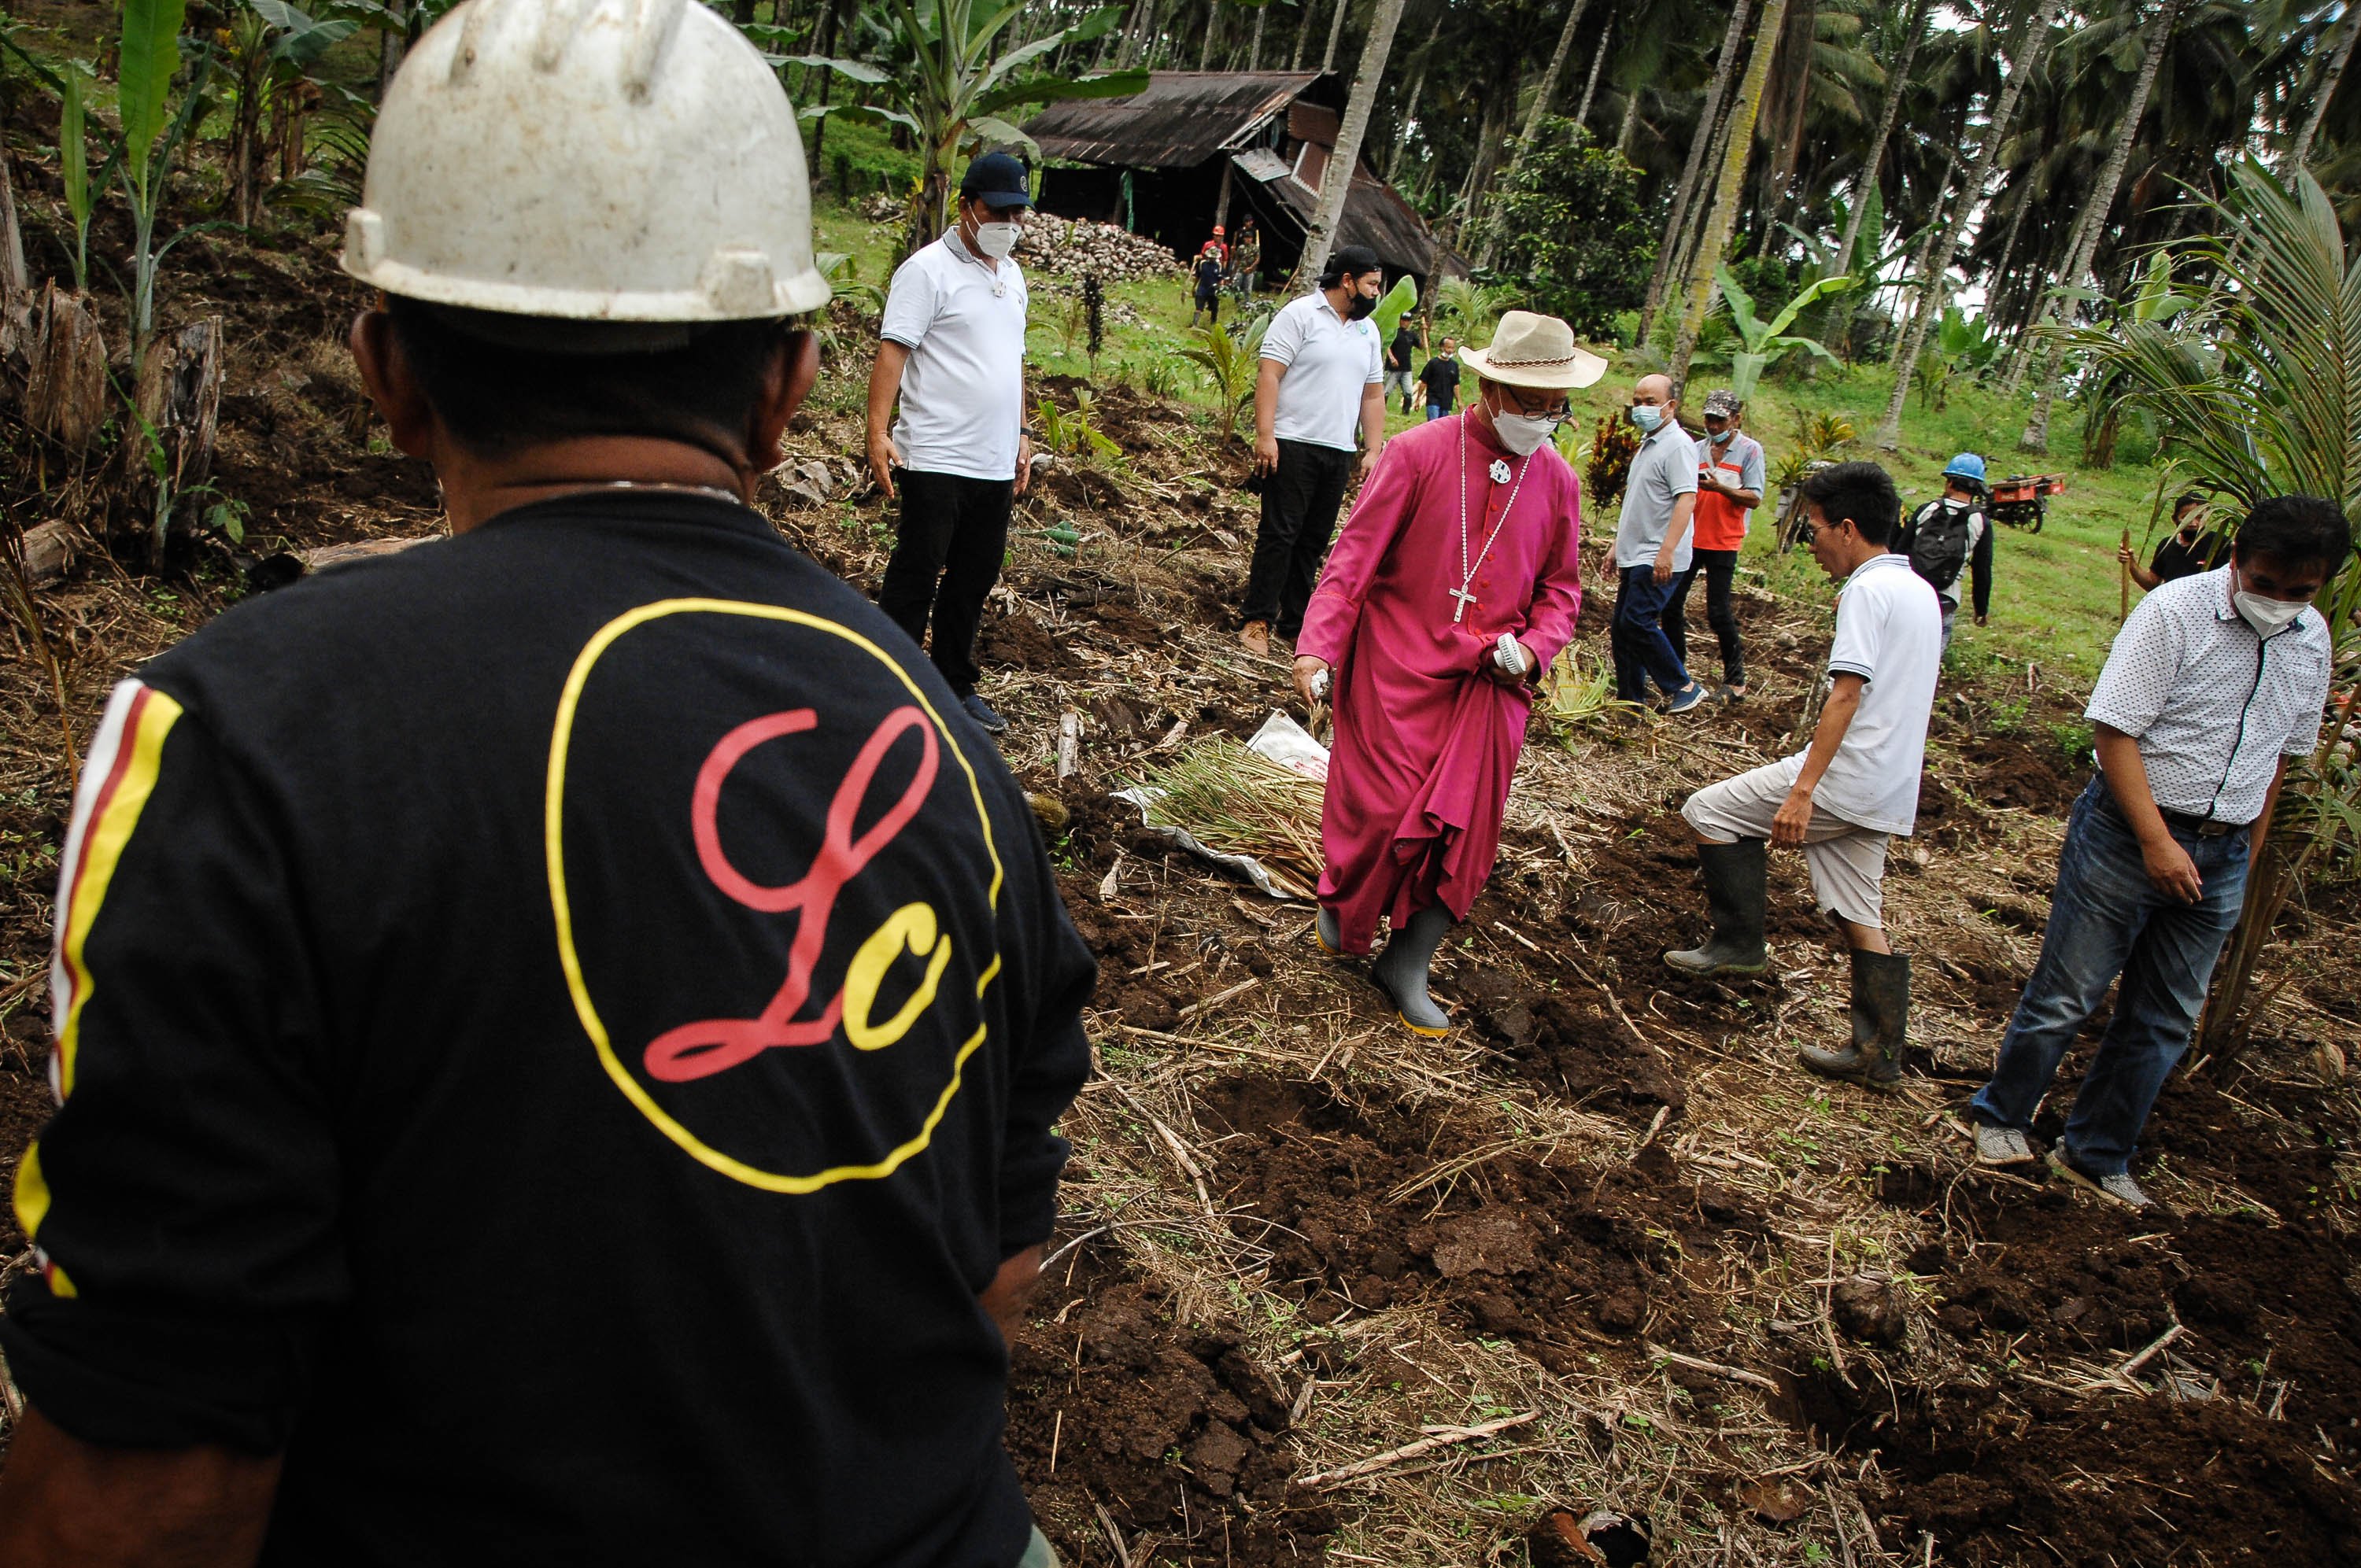 Uskup keuskupan Manado, Mgr. Benedictus Estephanus Rolly Untu menanam bibit serai bersama warga di lahan perkebunanan Desa Lolah, Minahasa, Sulawesi Utara.